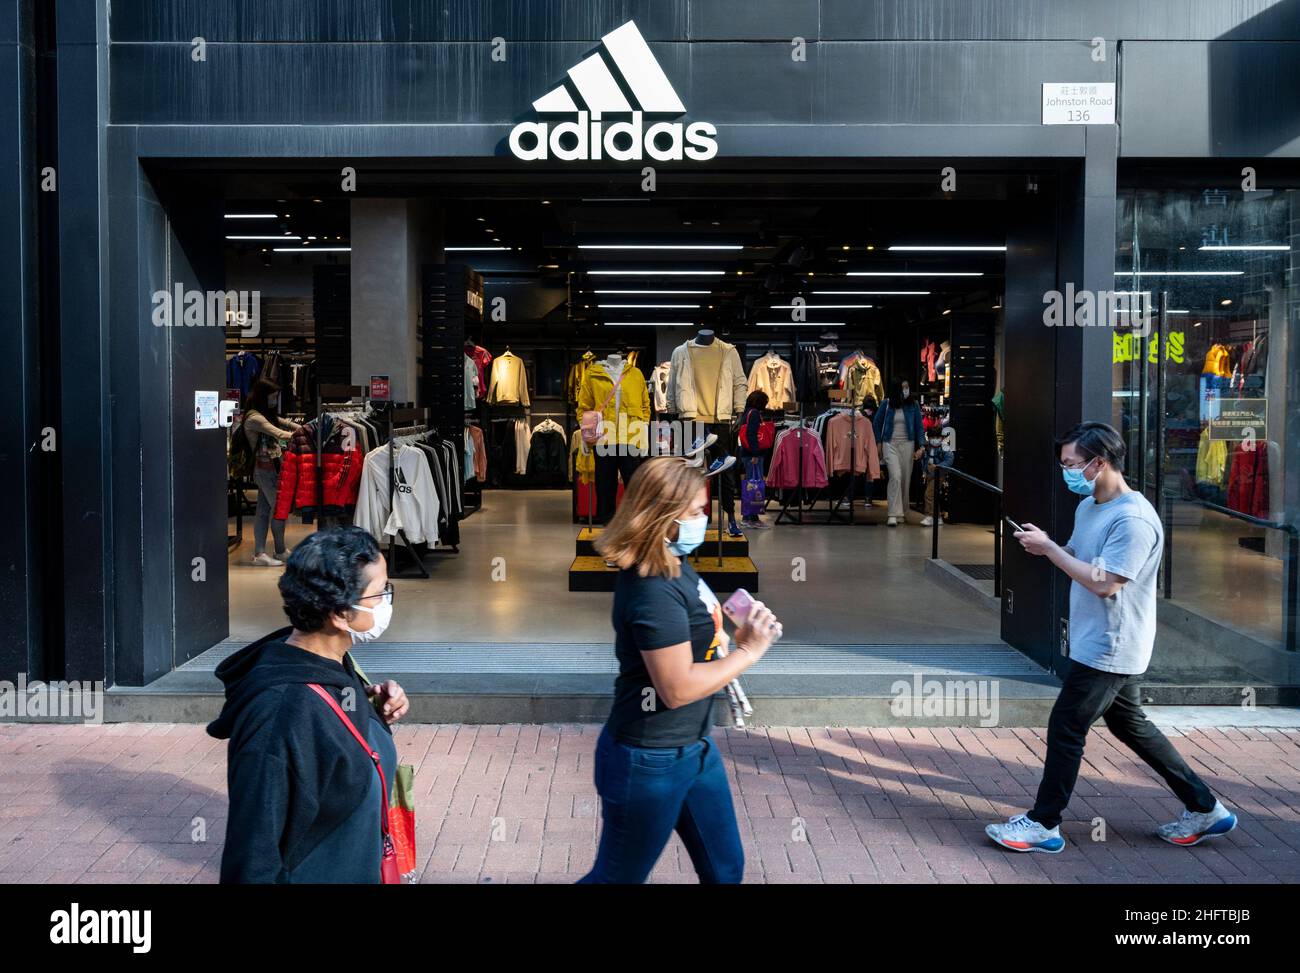 Adidas store china immagini e fotografie stock ad alta risoluzione - Alamy